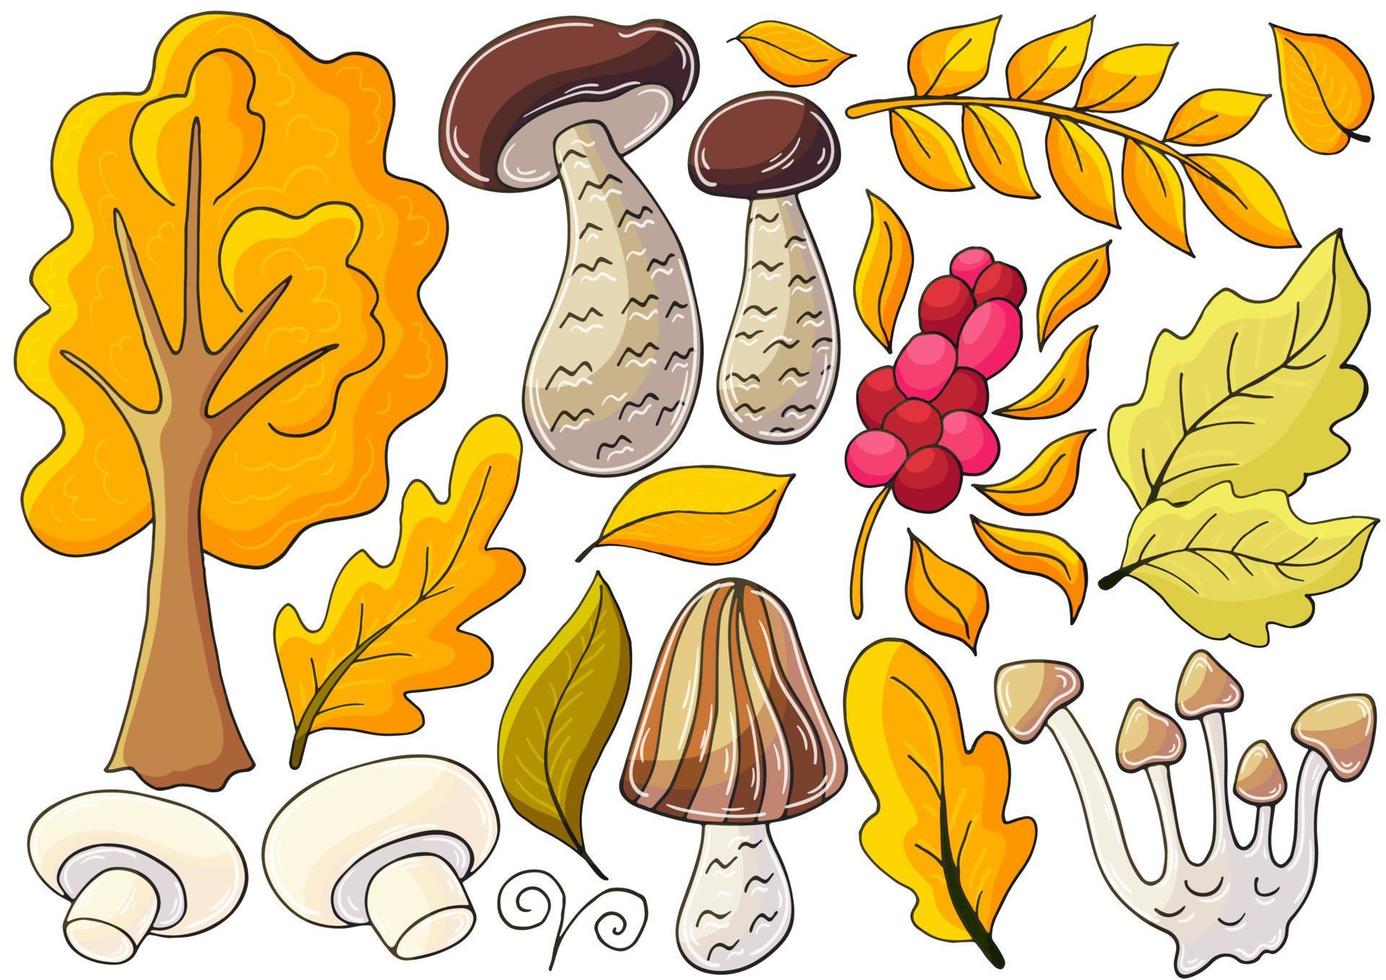 hösten illustration i handritad stil. barnteckning vektor